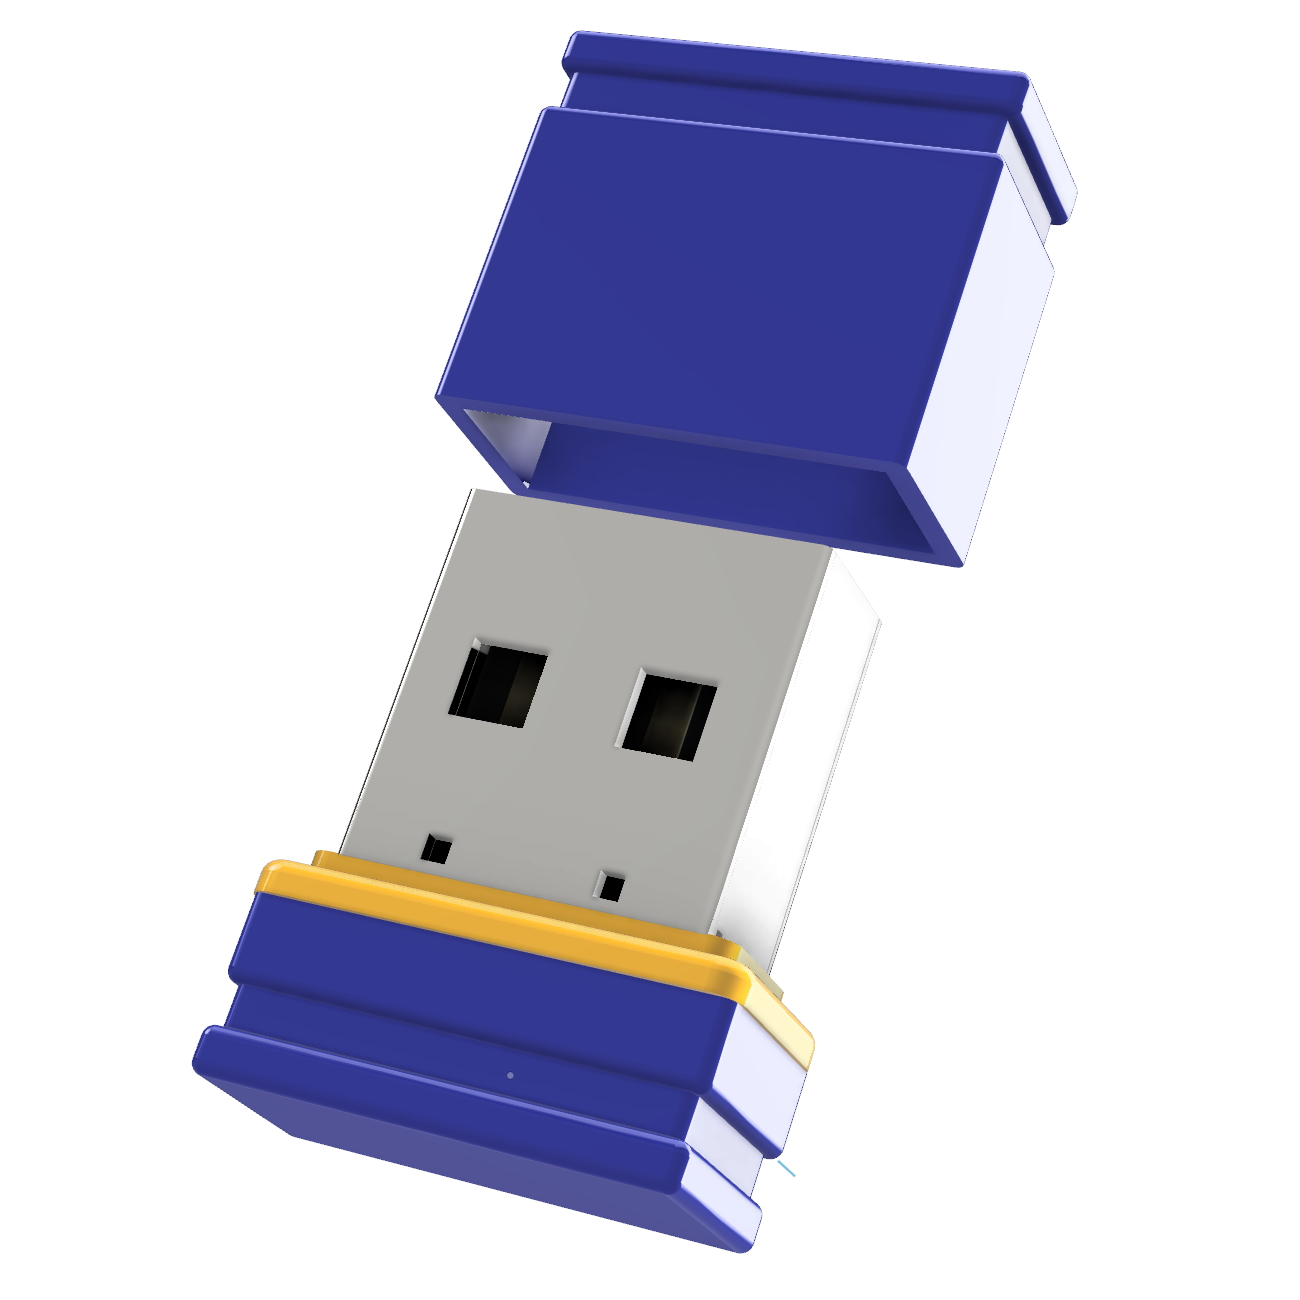 P1 GB) (Blau/Gelb, Mini USB-Stick ®ULTRA GERMANY USB 32